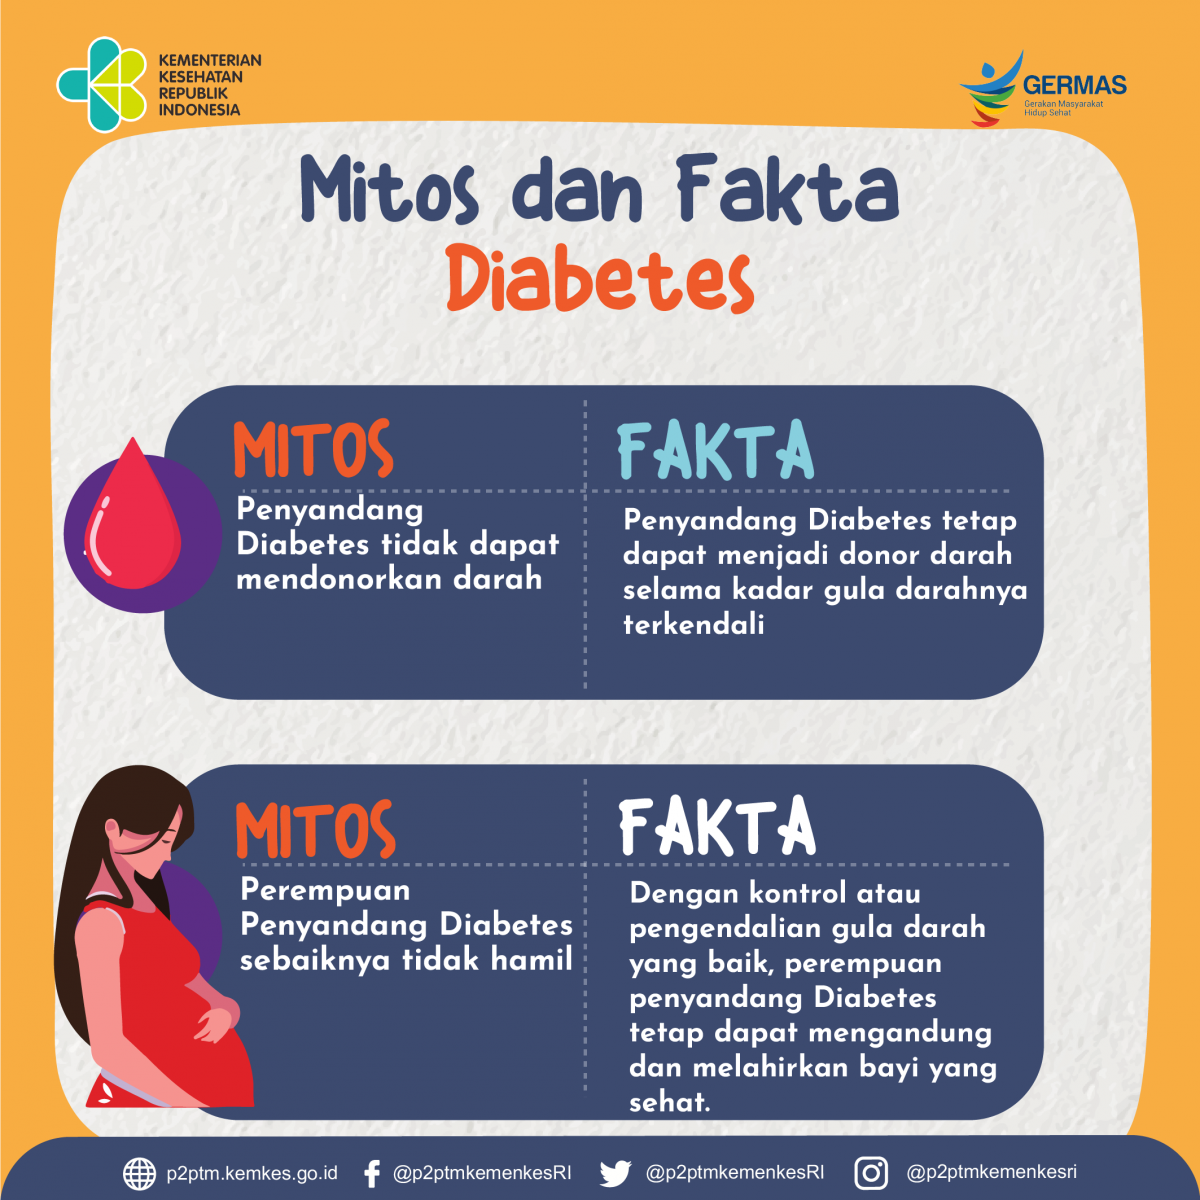 Simak mitos dan fakta mengenai penyakit Diabetes Melitus berikut ini.